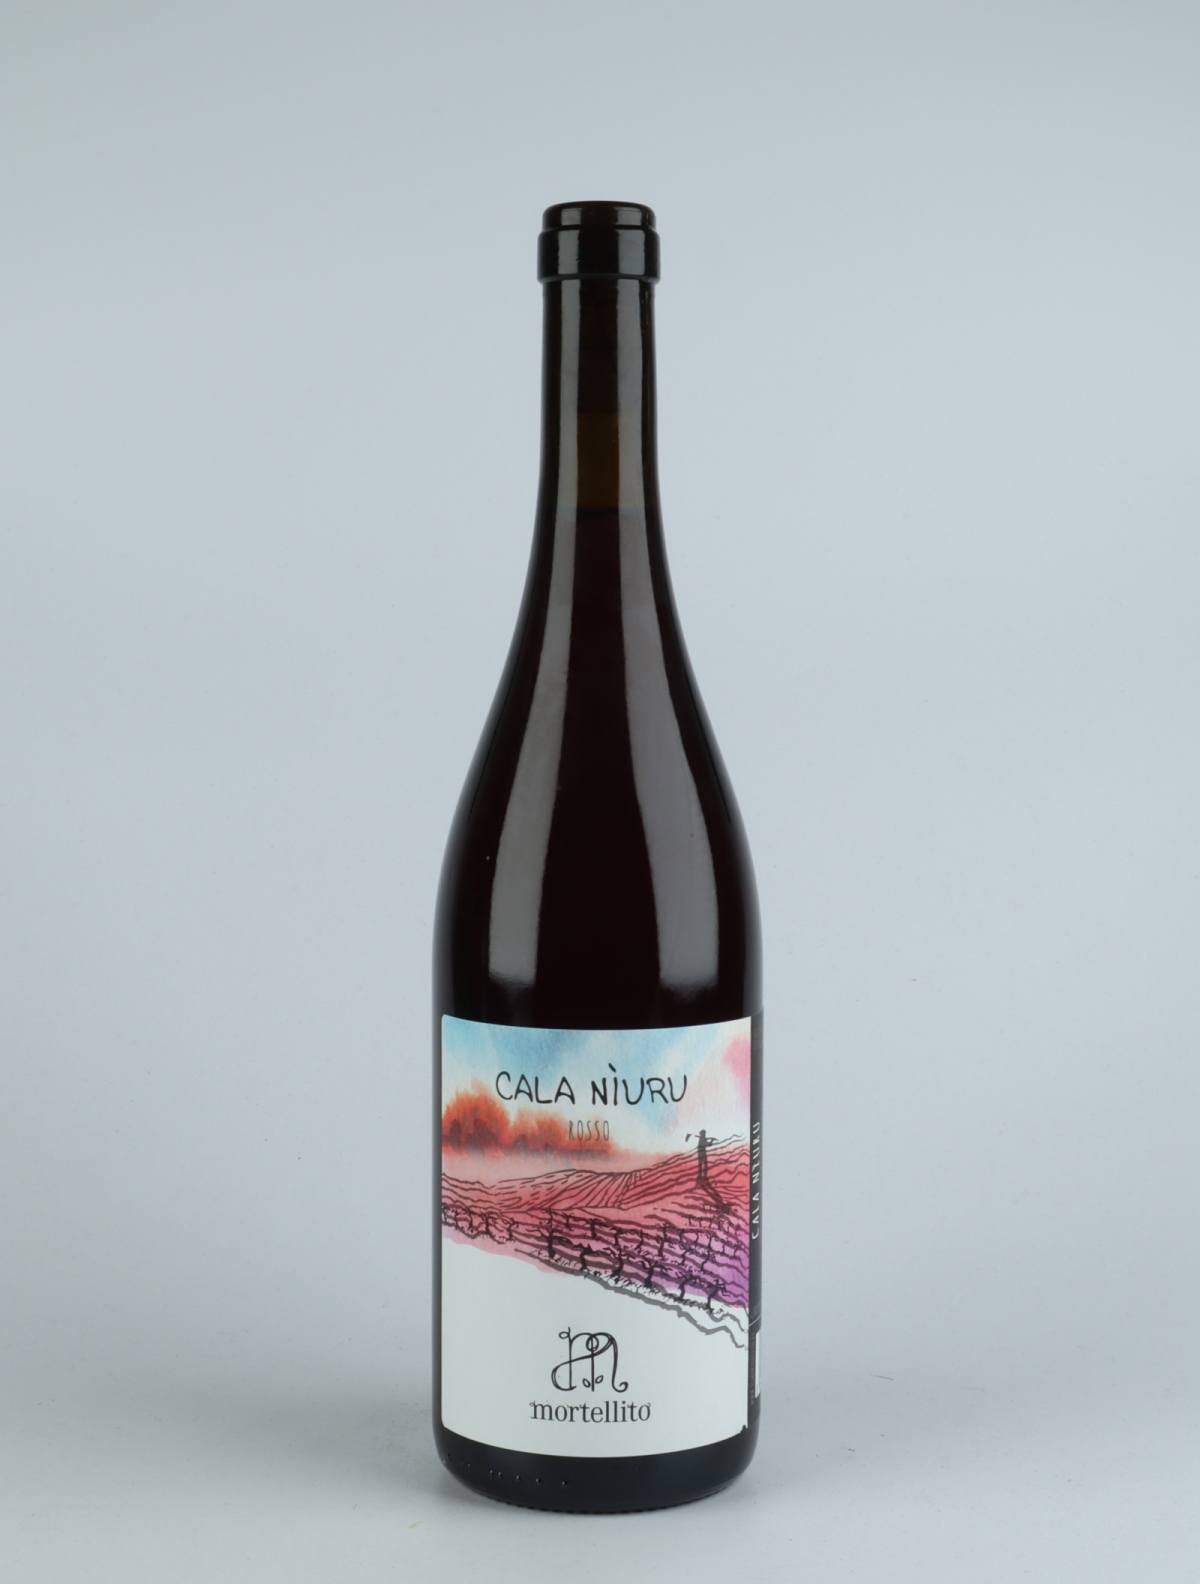 A bottle 2020 Calaniuru - Rosso Red wine from Il Mortellito, Sicily in Italy